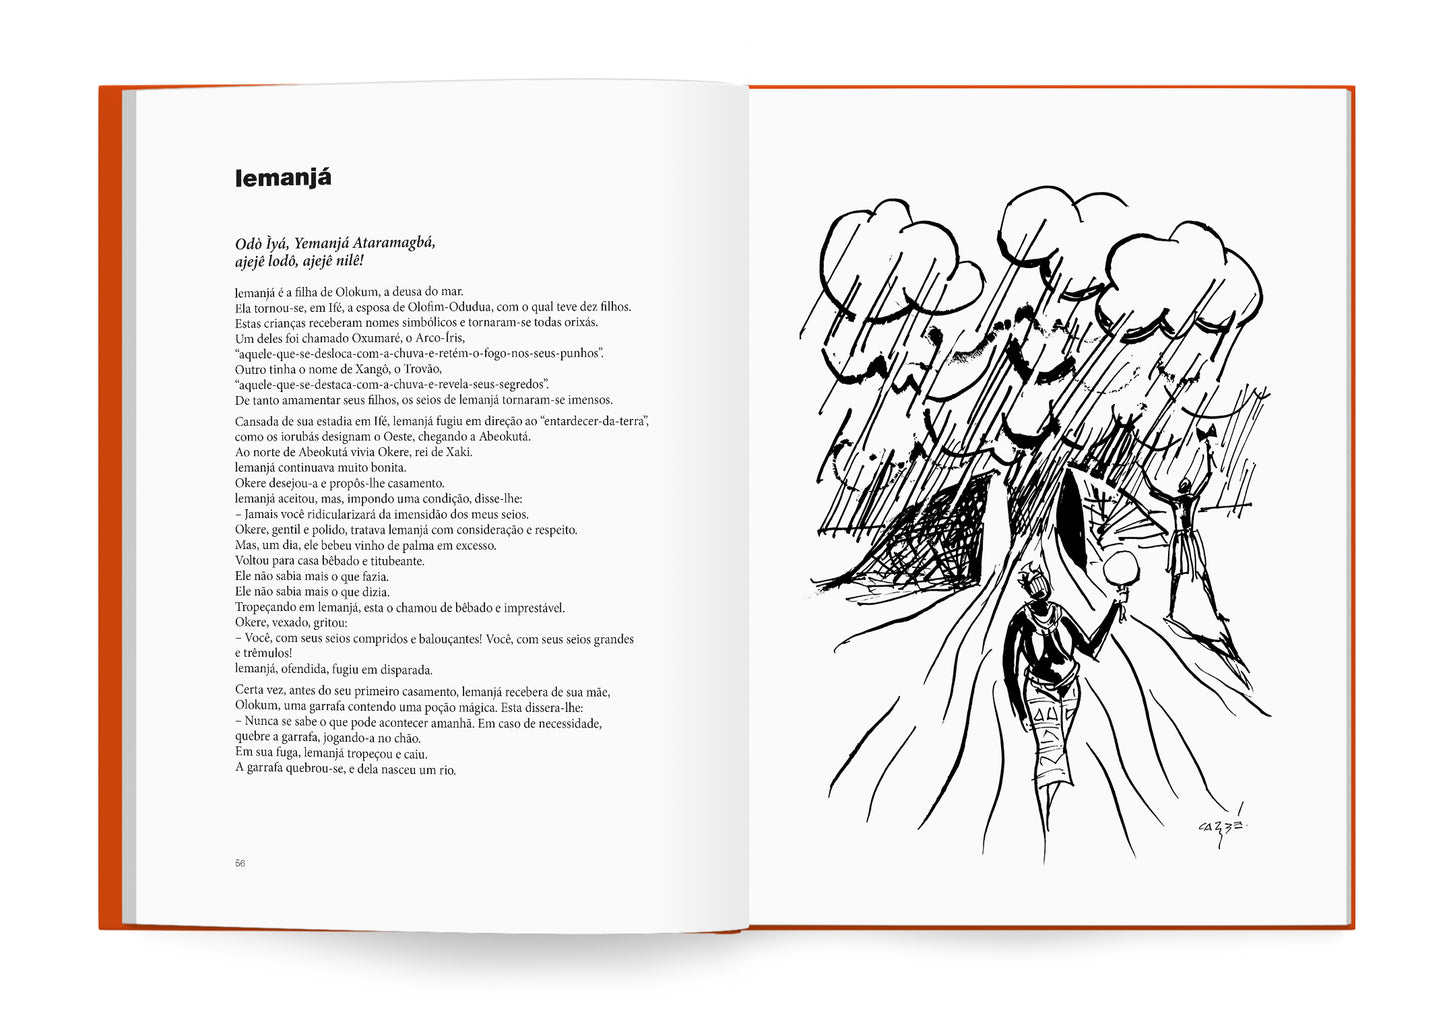 livro lendas africanas dos orixás de Pierre Verger com ilustrações de Carybé. Nova edição.